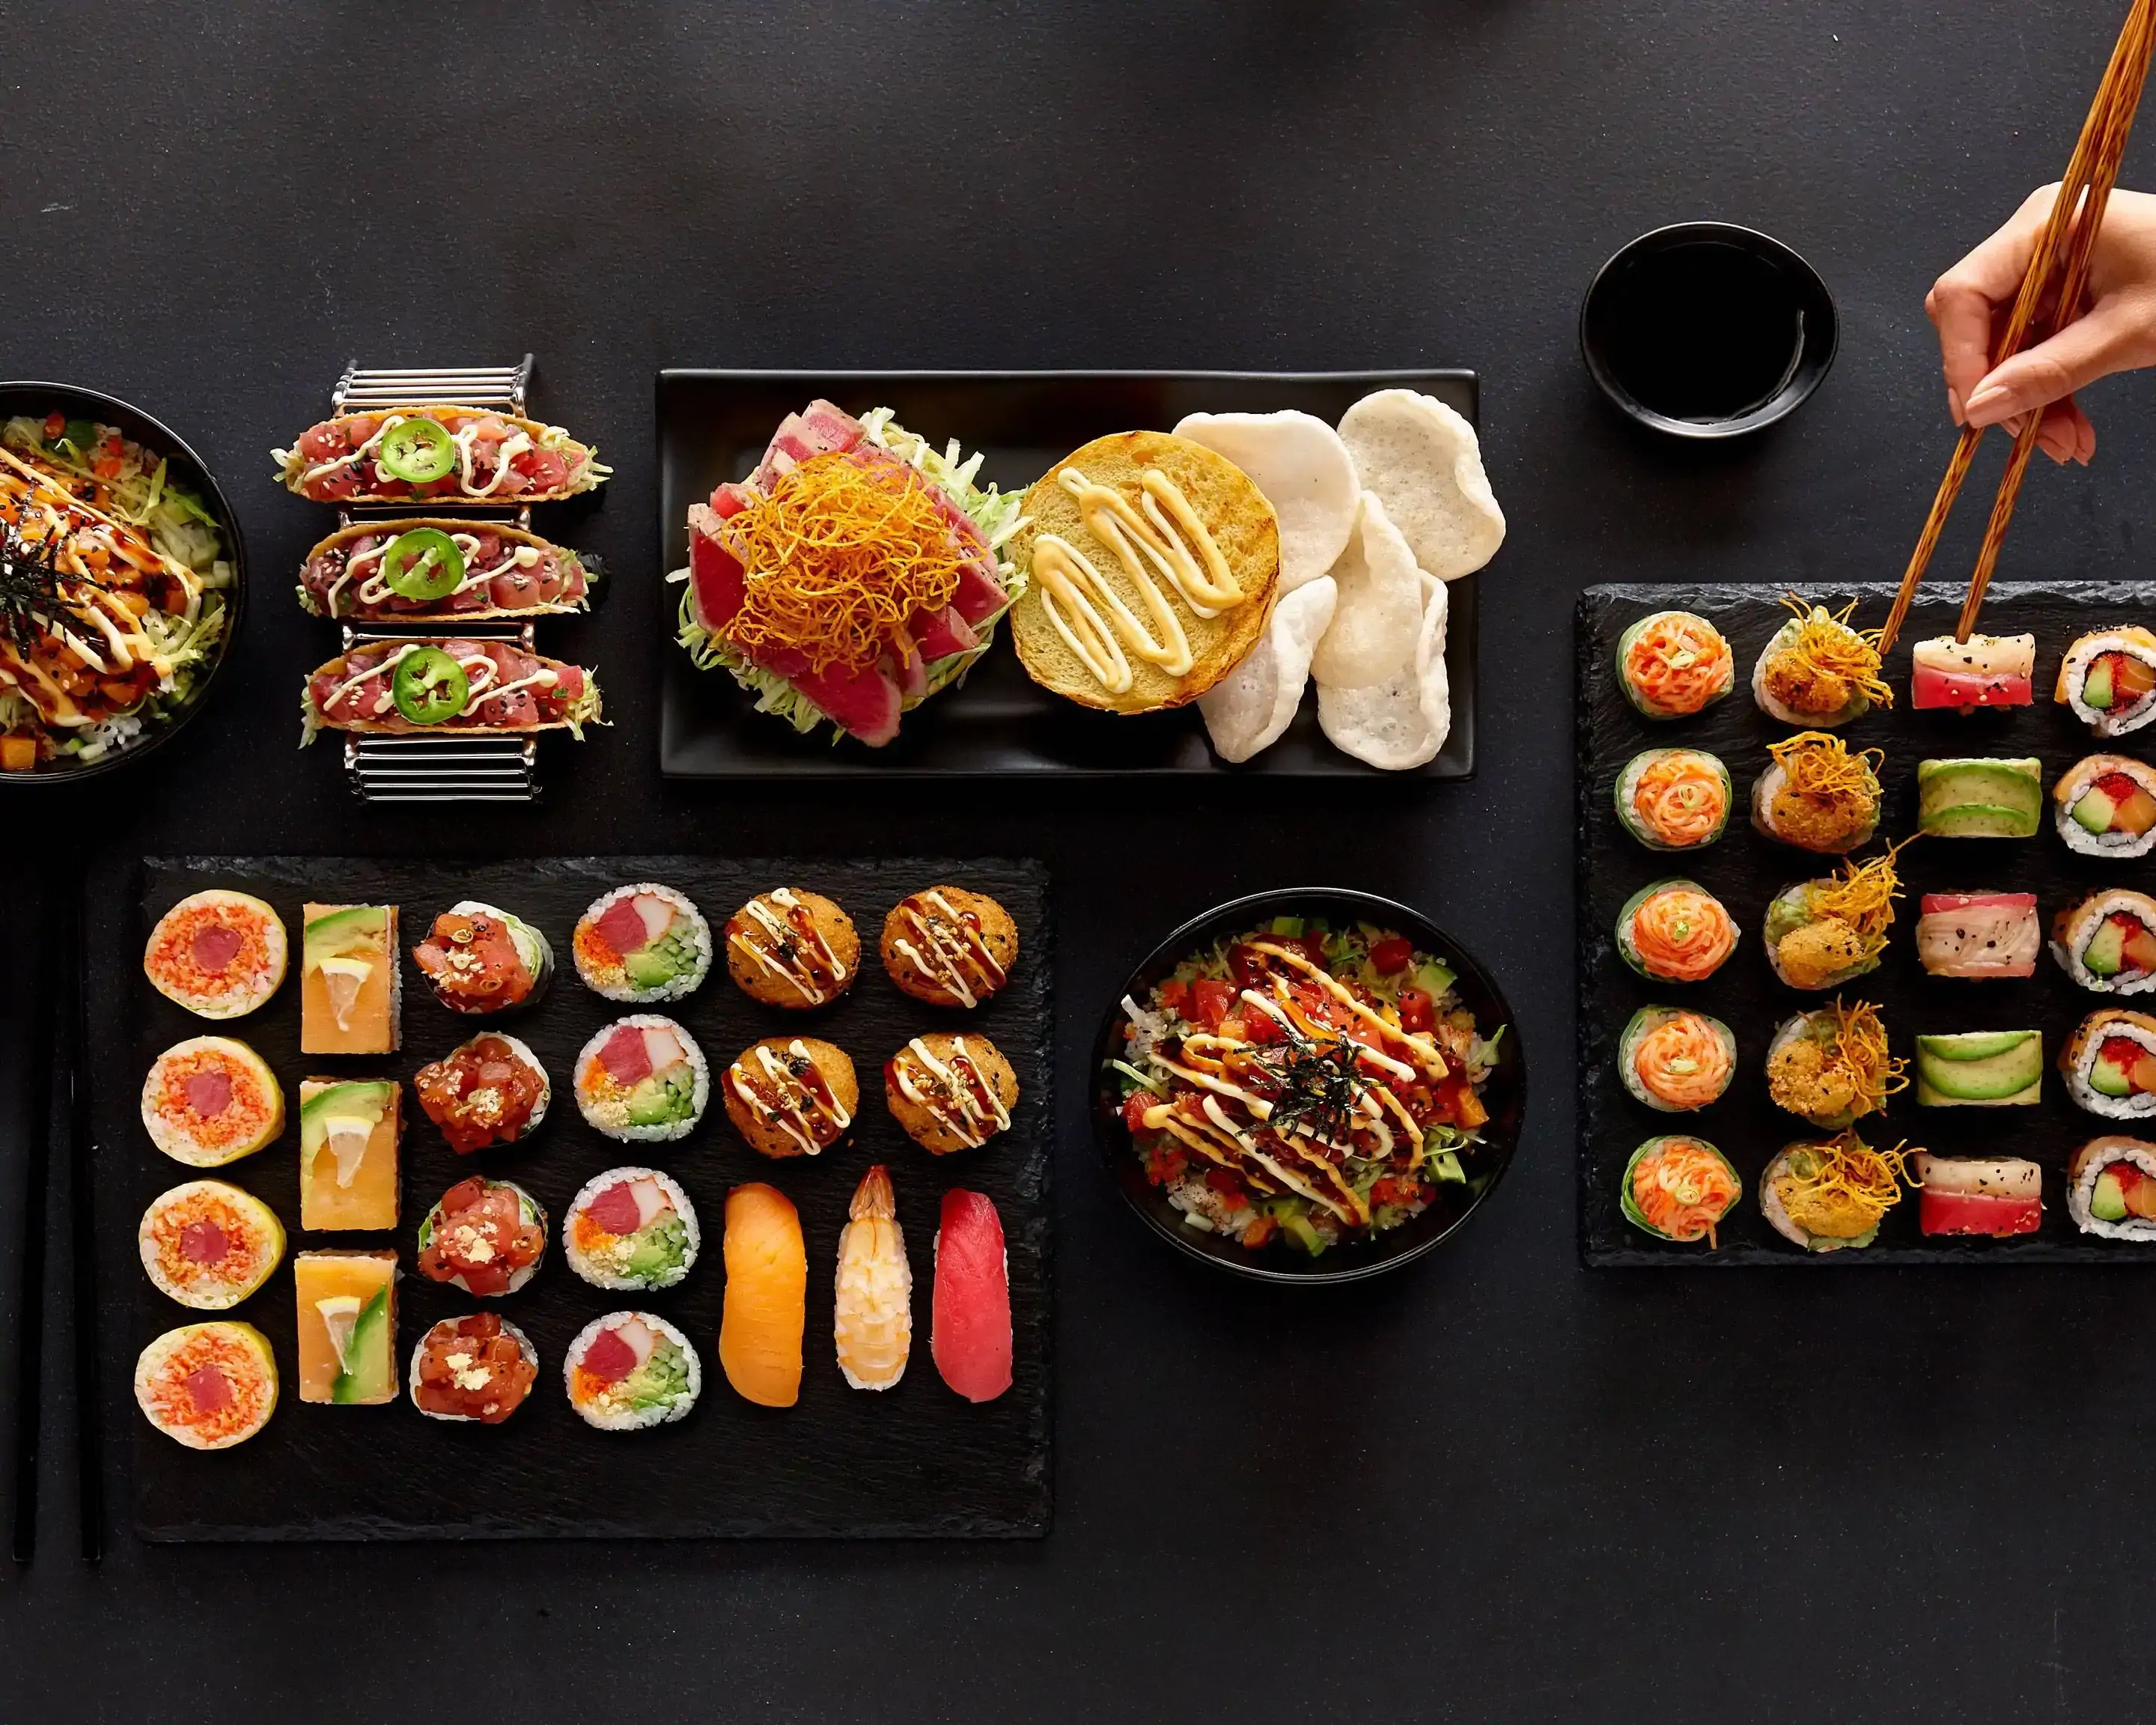 Top 3 des meilleurs kits sushis à petits prix ! 